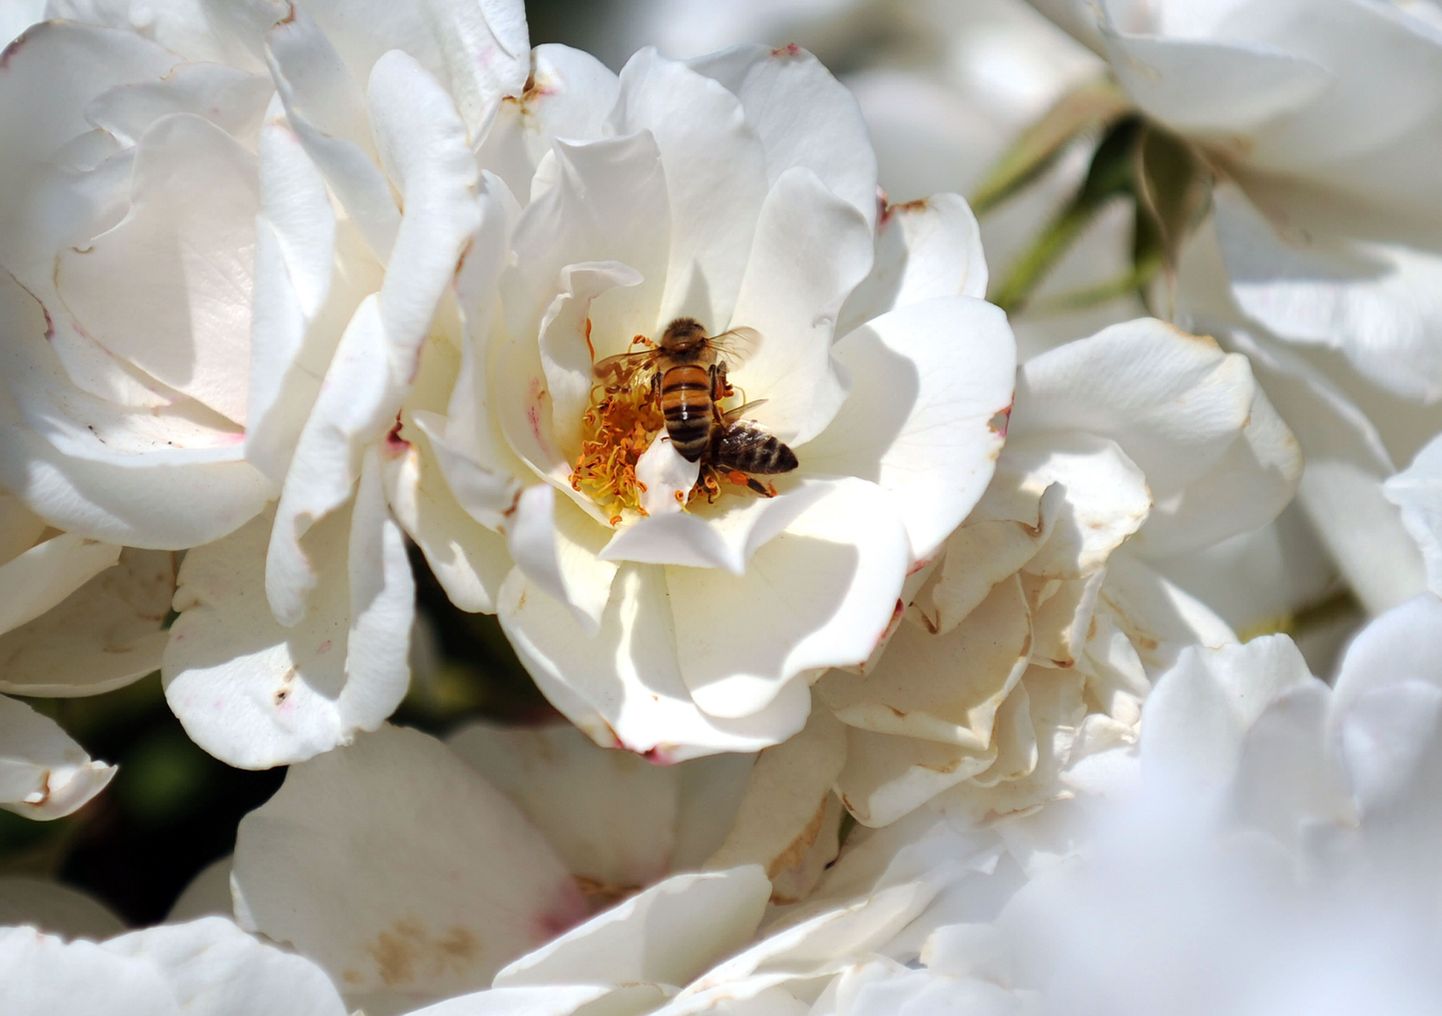 Mesilased on kofeiini- ja nikotiinisõltlased?